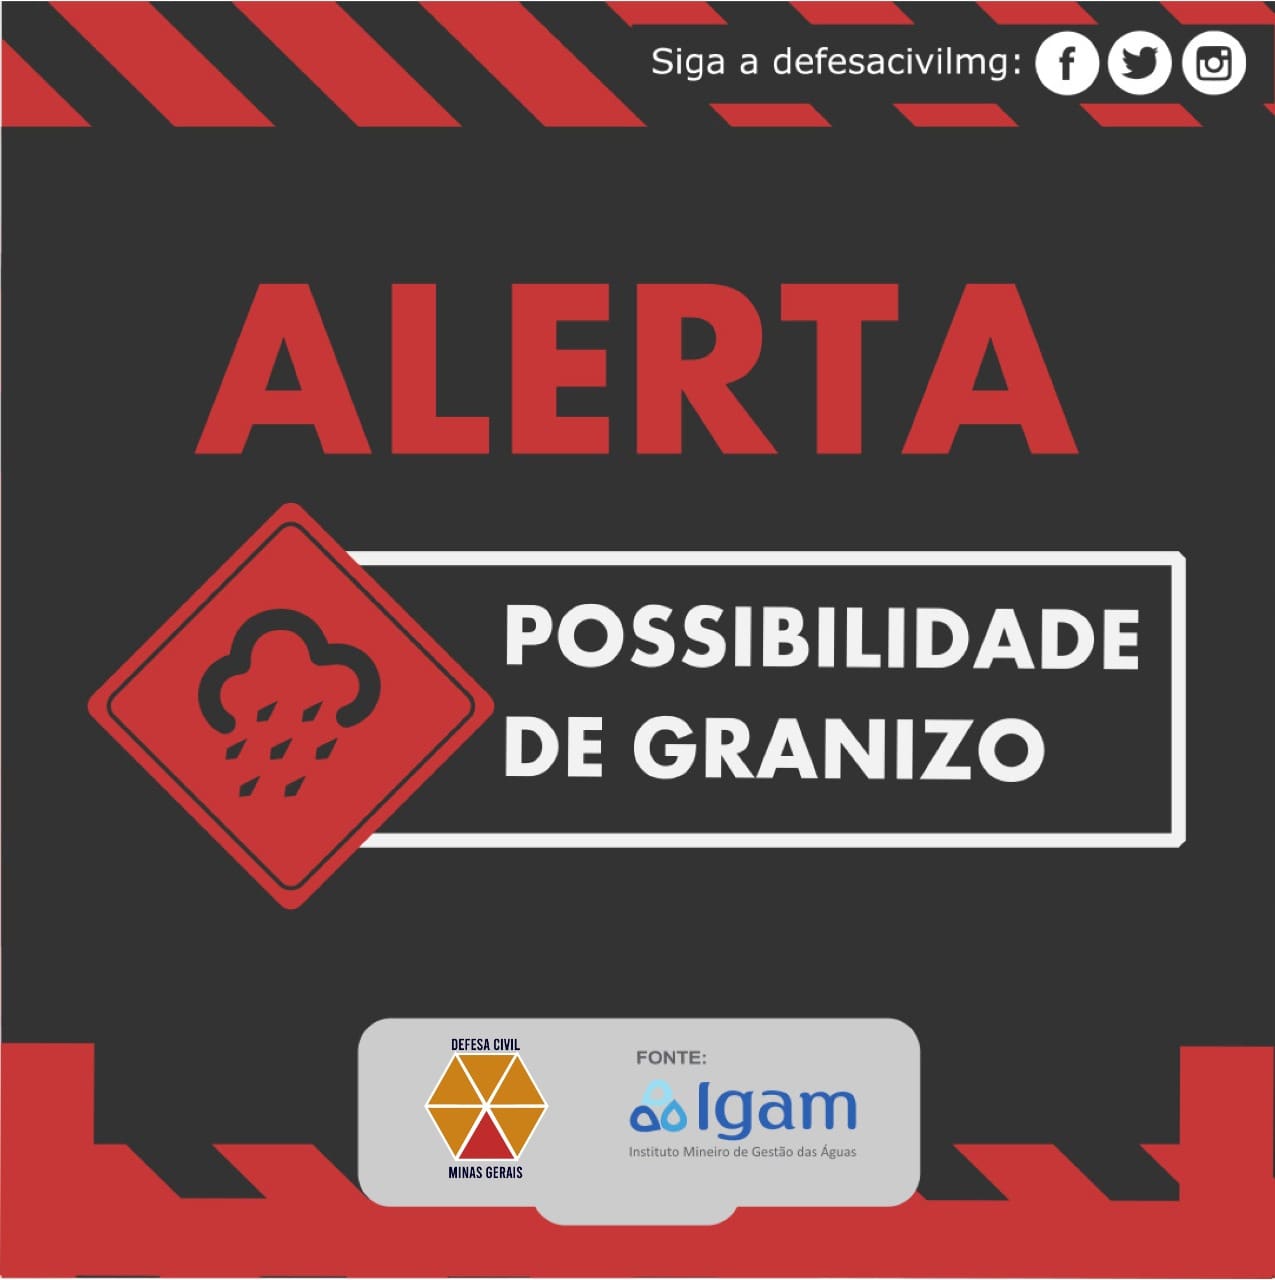 Defesa Civil de Minas Gerais emite alerta para tempestade e cita algumas cidades entre elas Bom Despacho